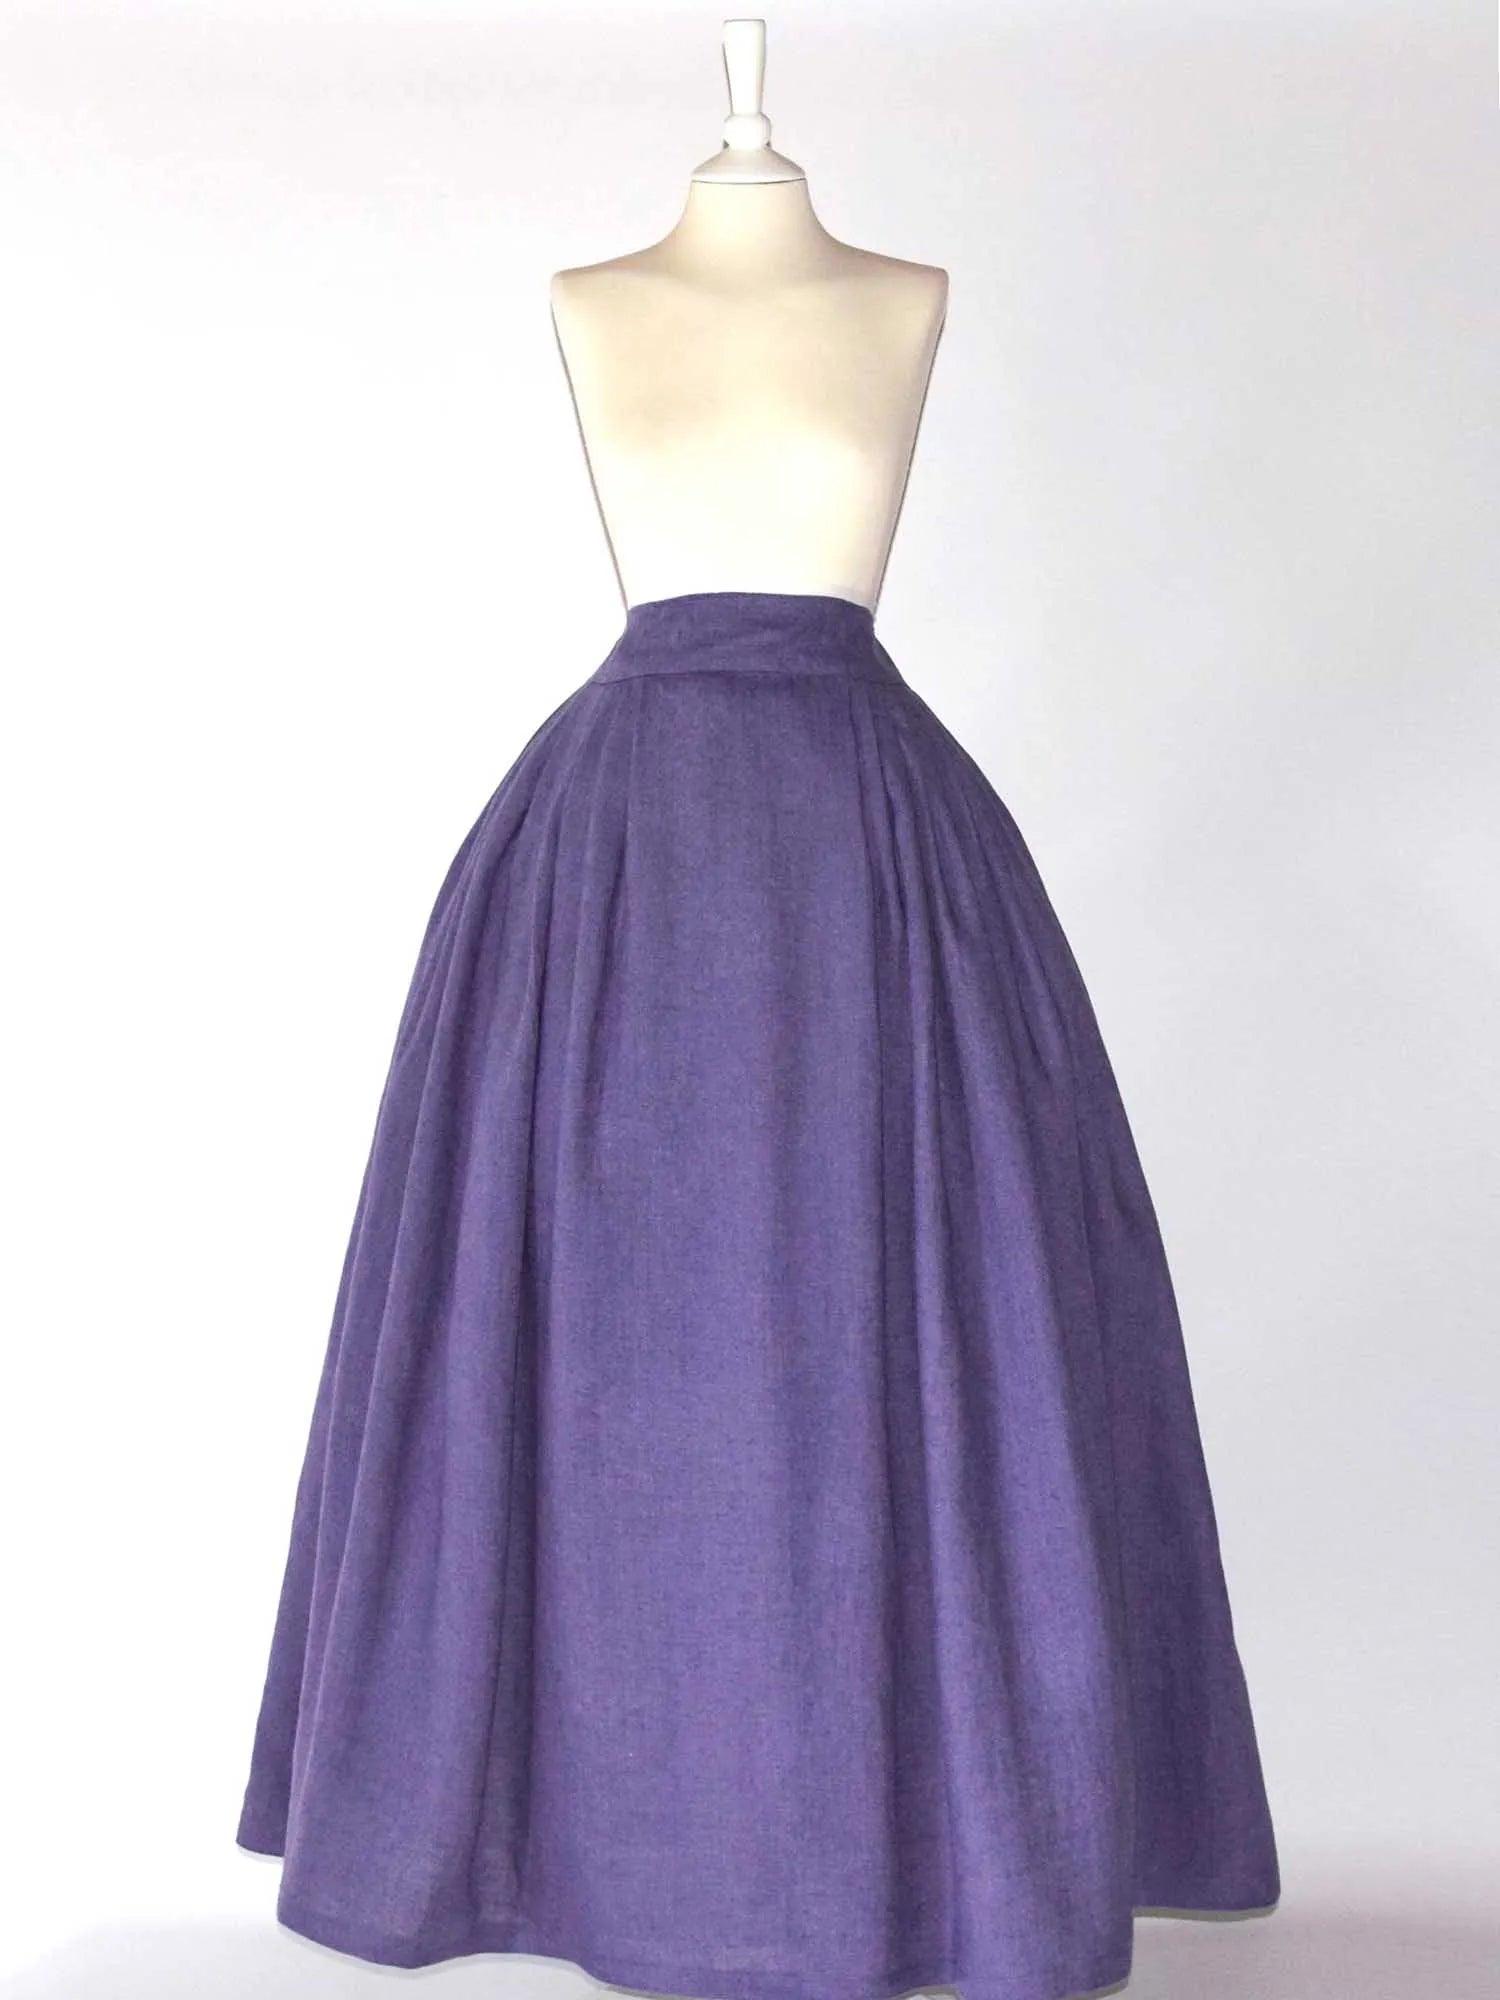 HELOISE, Historical Skirt in Plum Purple Linen - Atelier Serraspina